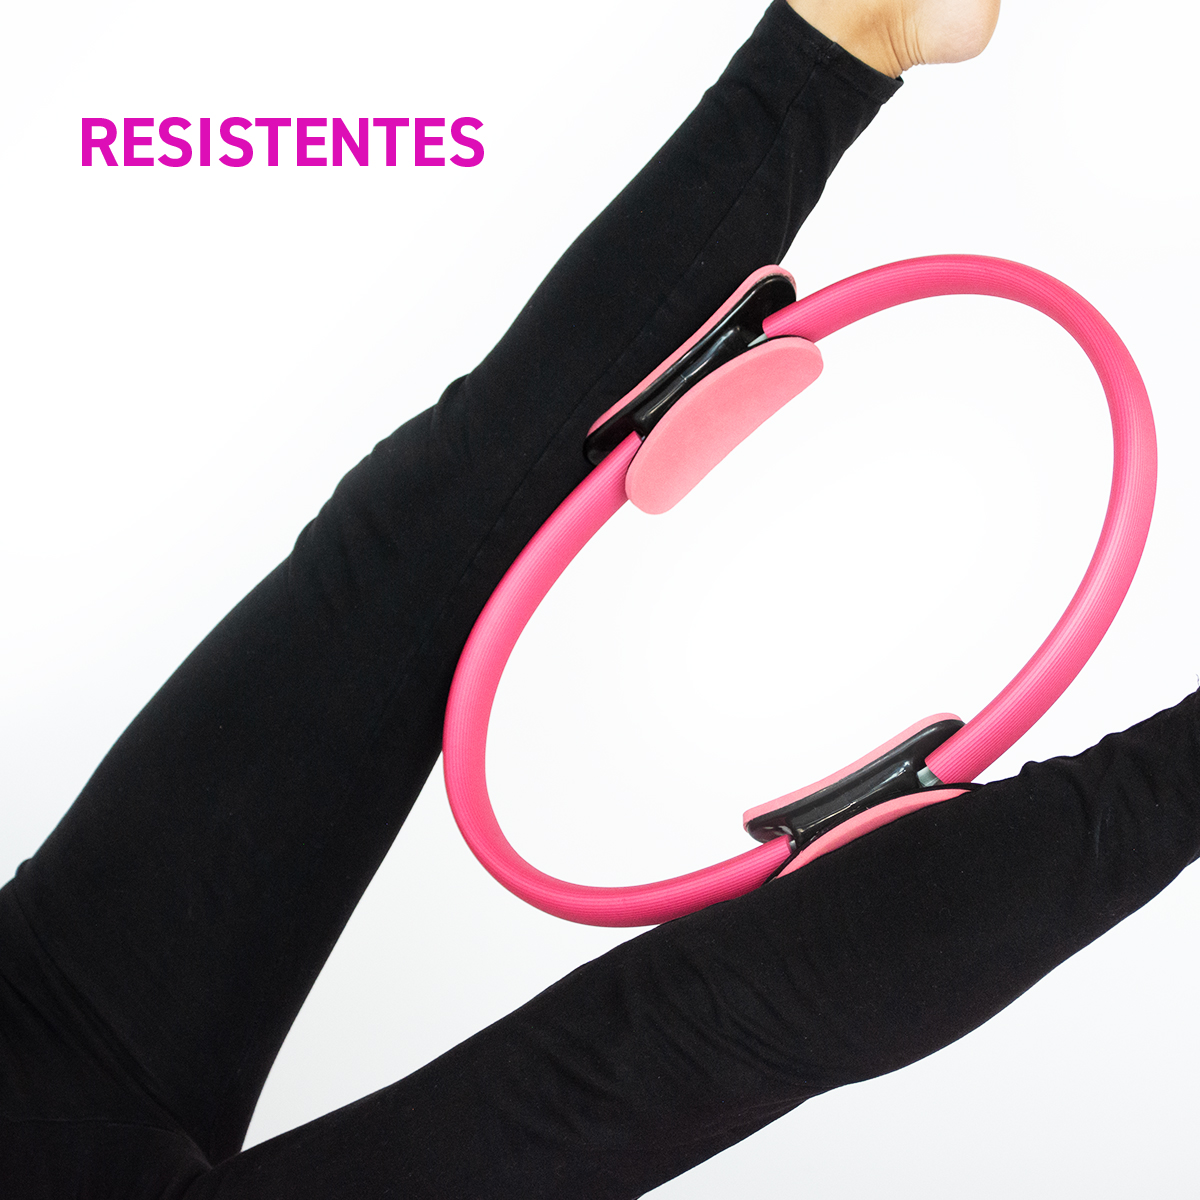 Aro de Resistencia para Yoga, Pilates y Fitness color Rosa